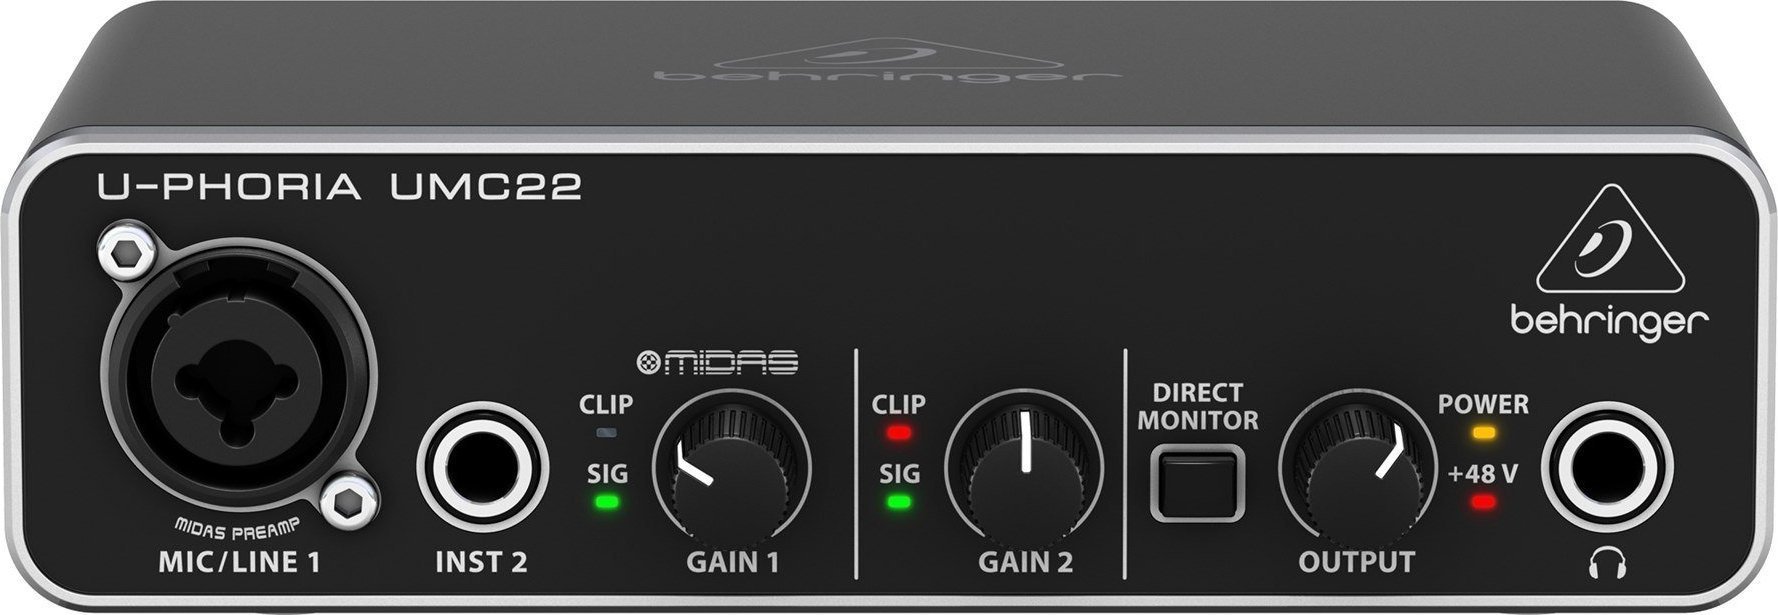 Placa de sunet Behringer Behringer UMC22 - Interfata audio USB